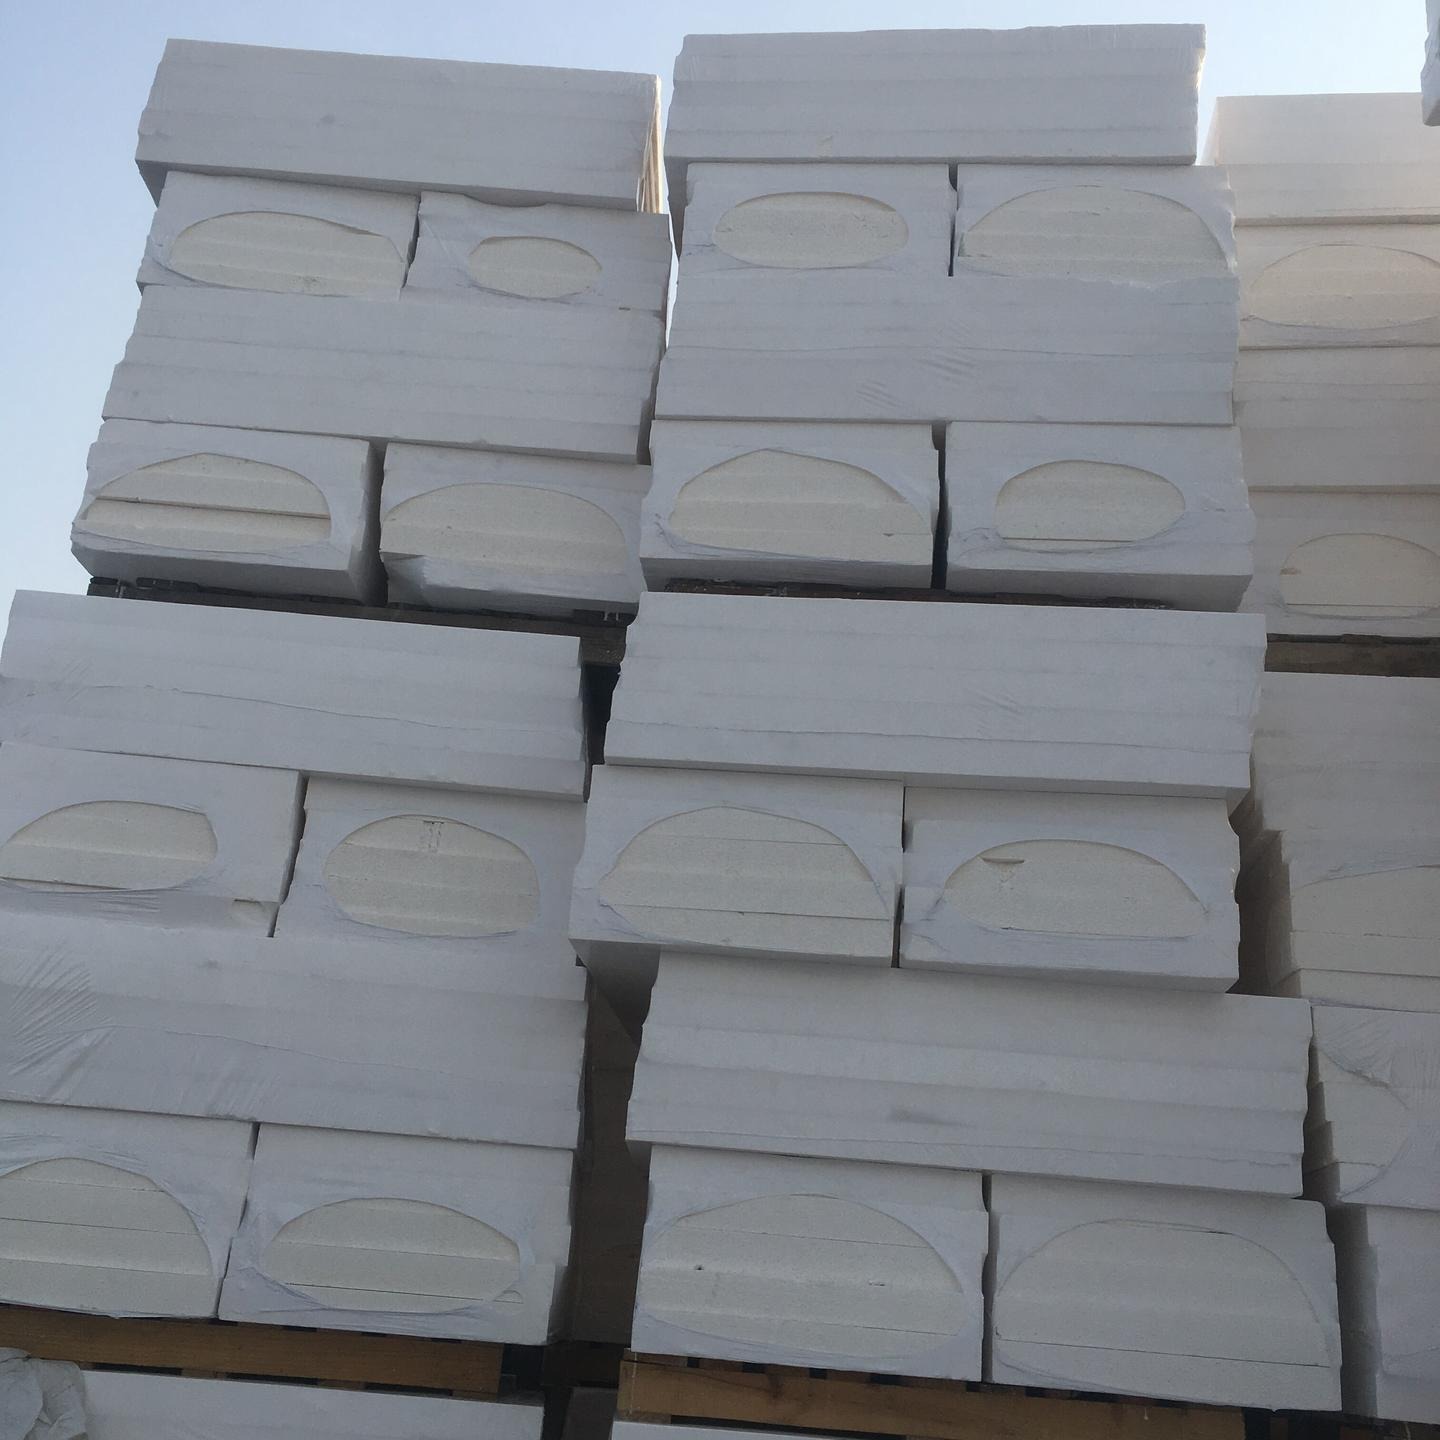 硅质改性聚苯板 直销硅质板 外墙防火硅质板 犇腾硅质板厂家 硅质板价格 质量保证